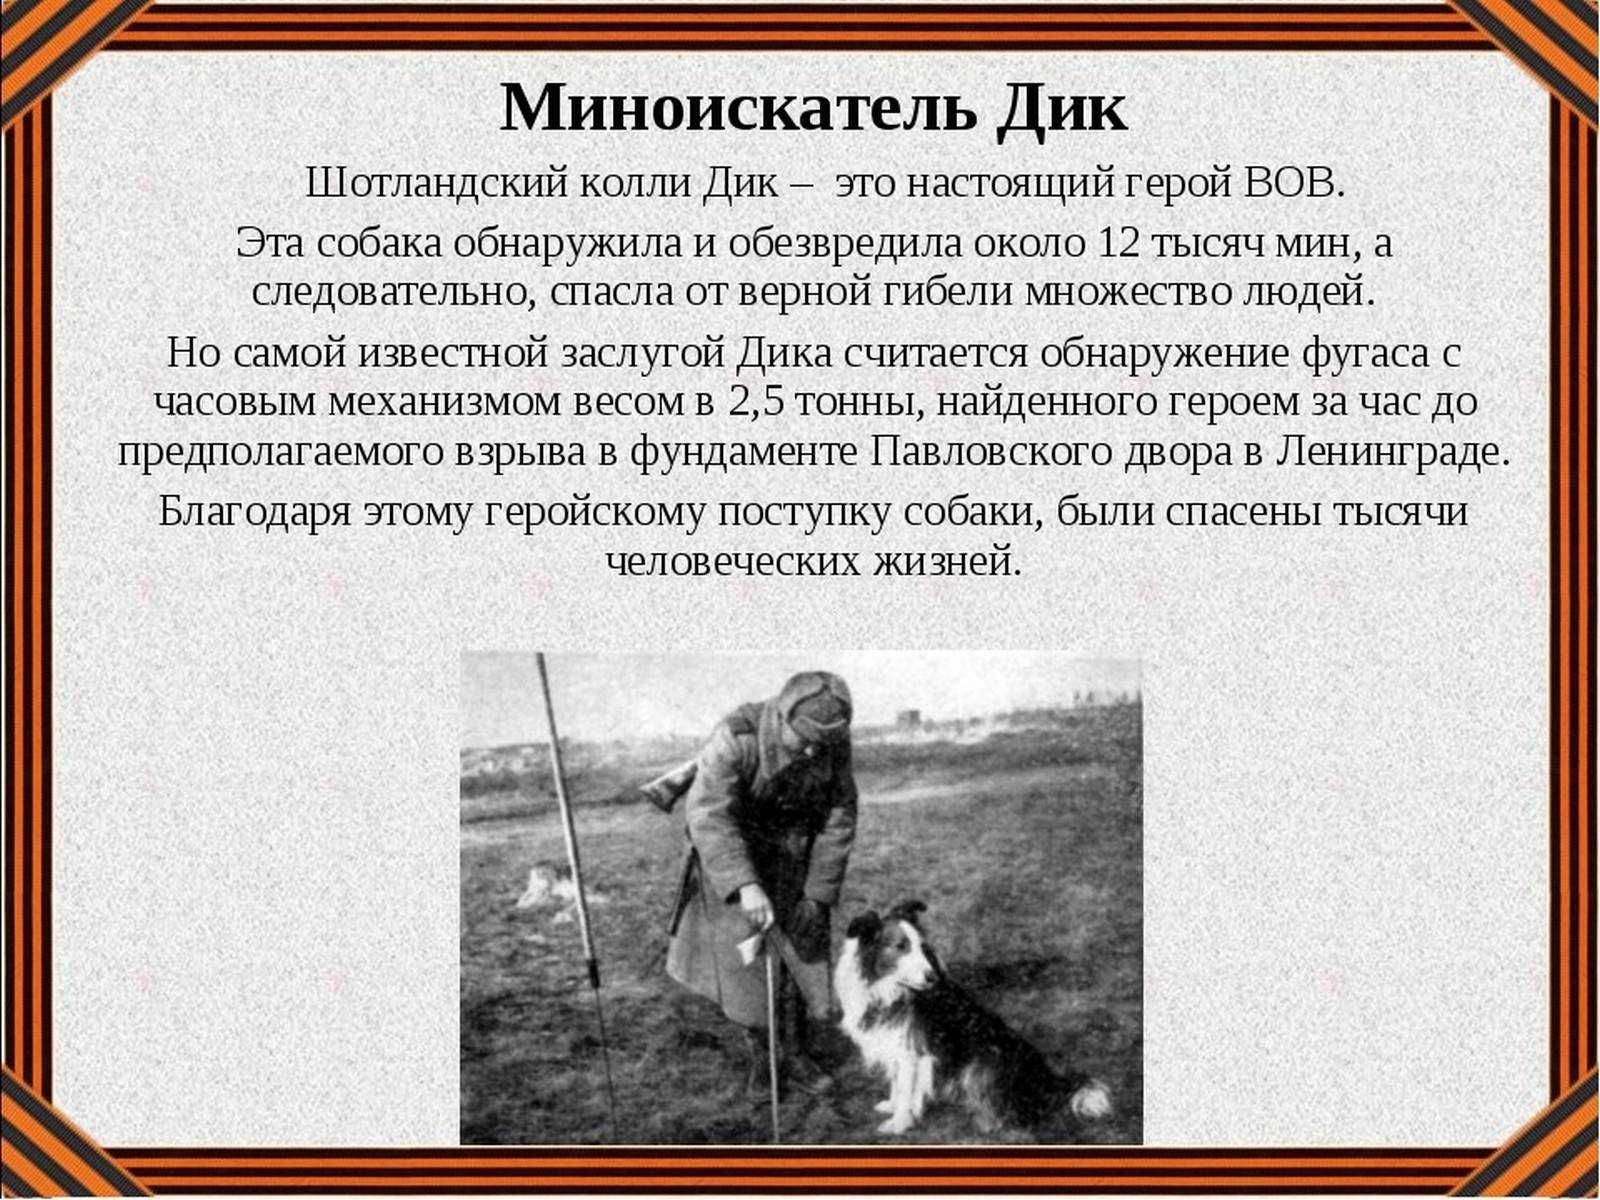 Как животные помогали людям во время войны? собаки - герои великой отечественной войны